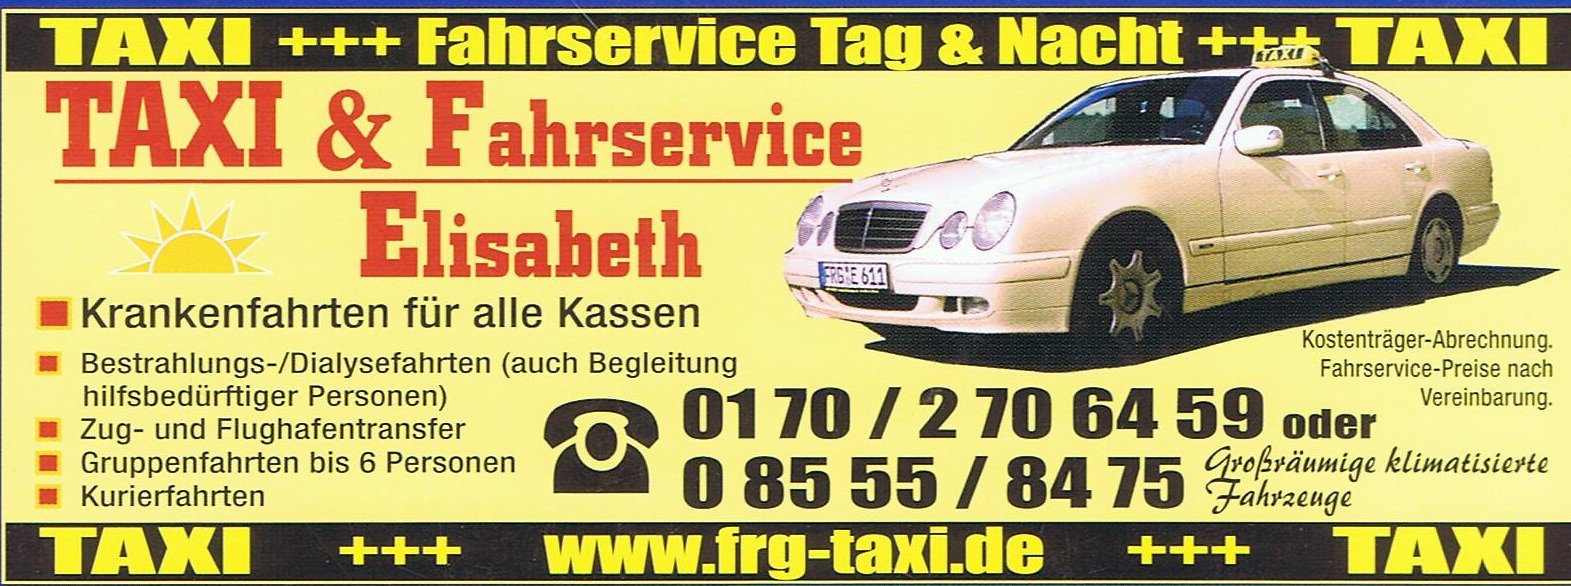 Taxi und Fahrservice Ringelai